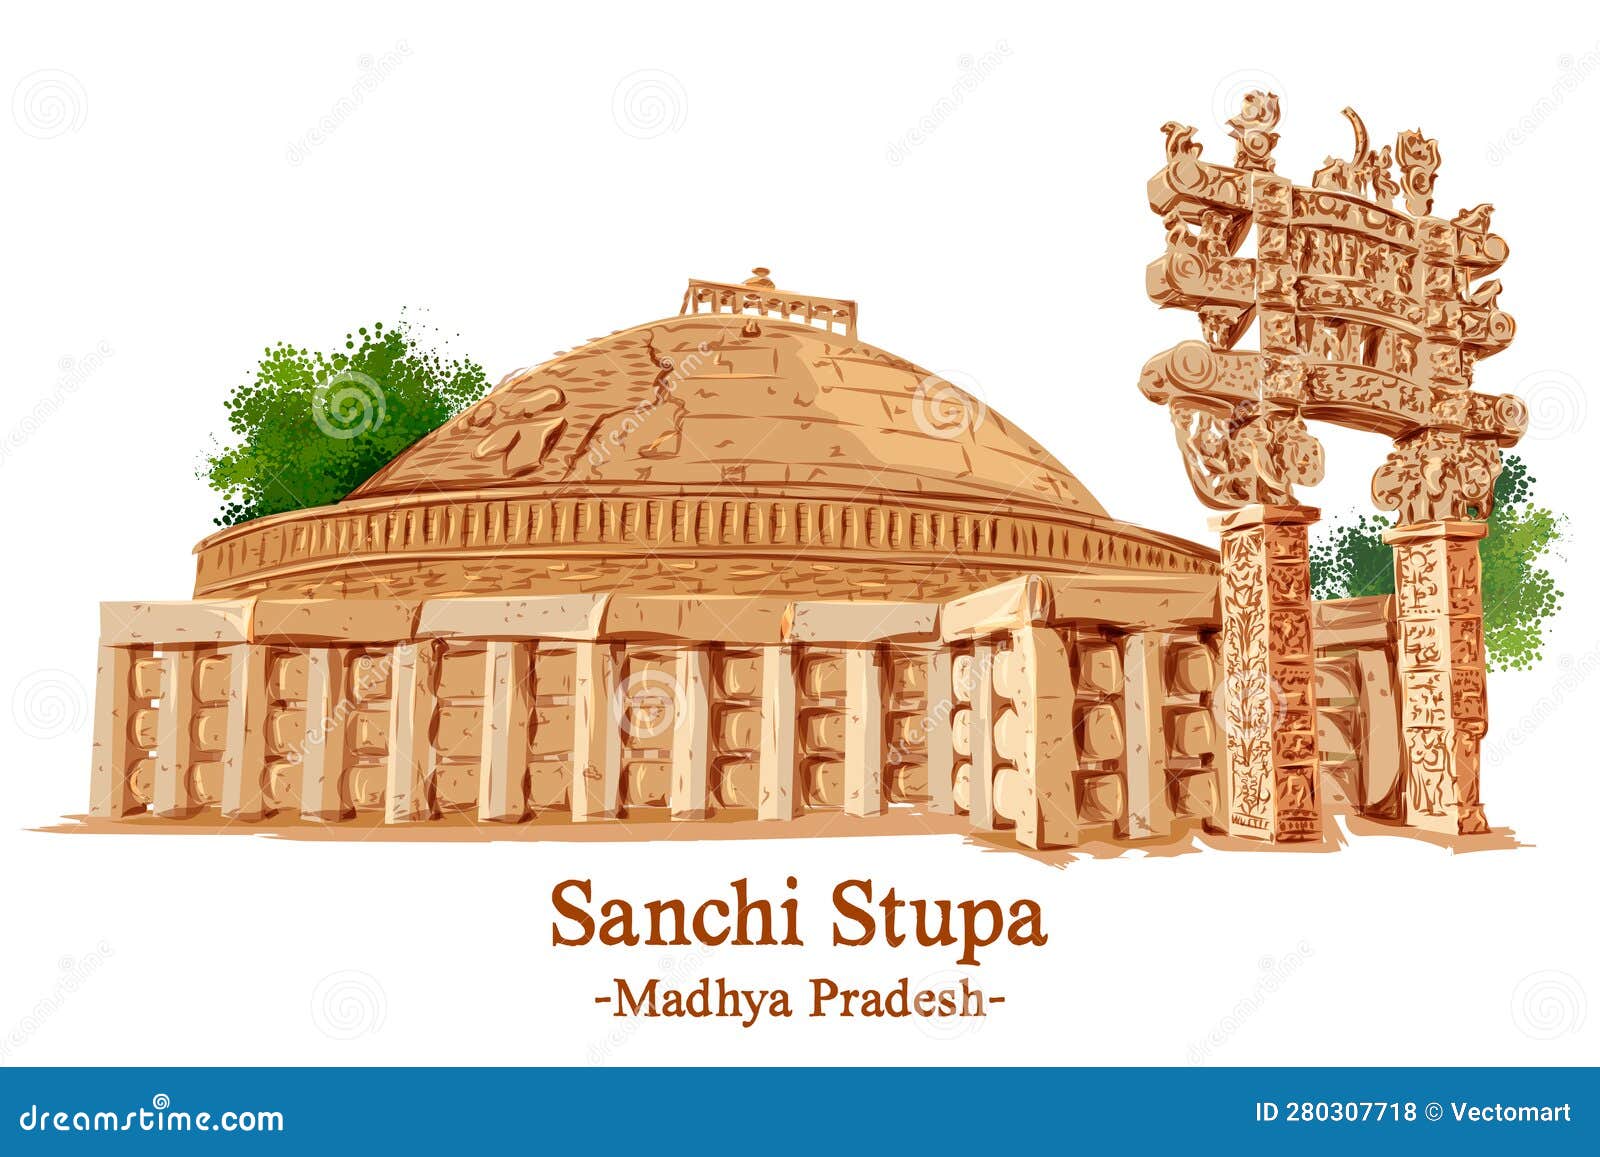 India  Madhya Pradesh  Sanchi  Stupa 1  305c  The Buddh  Flickr